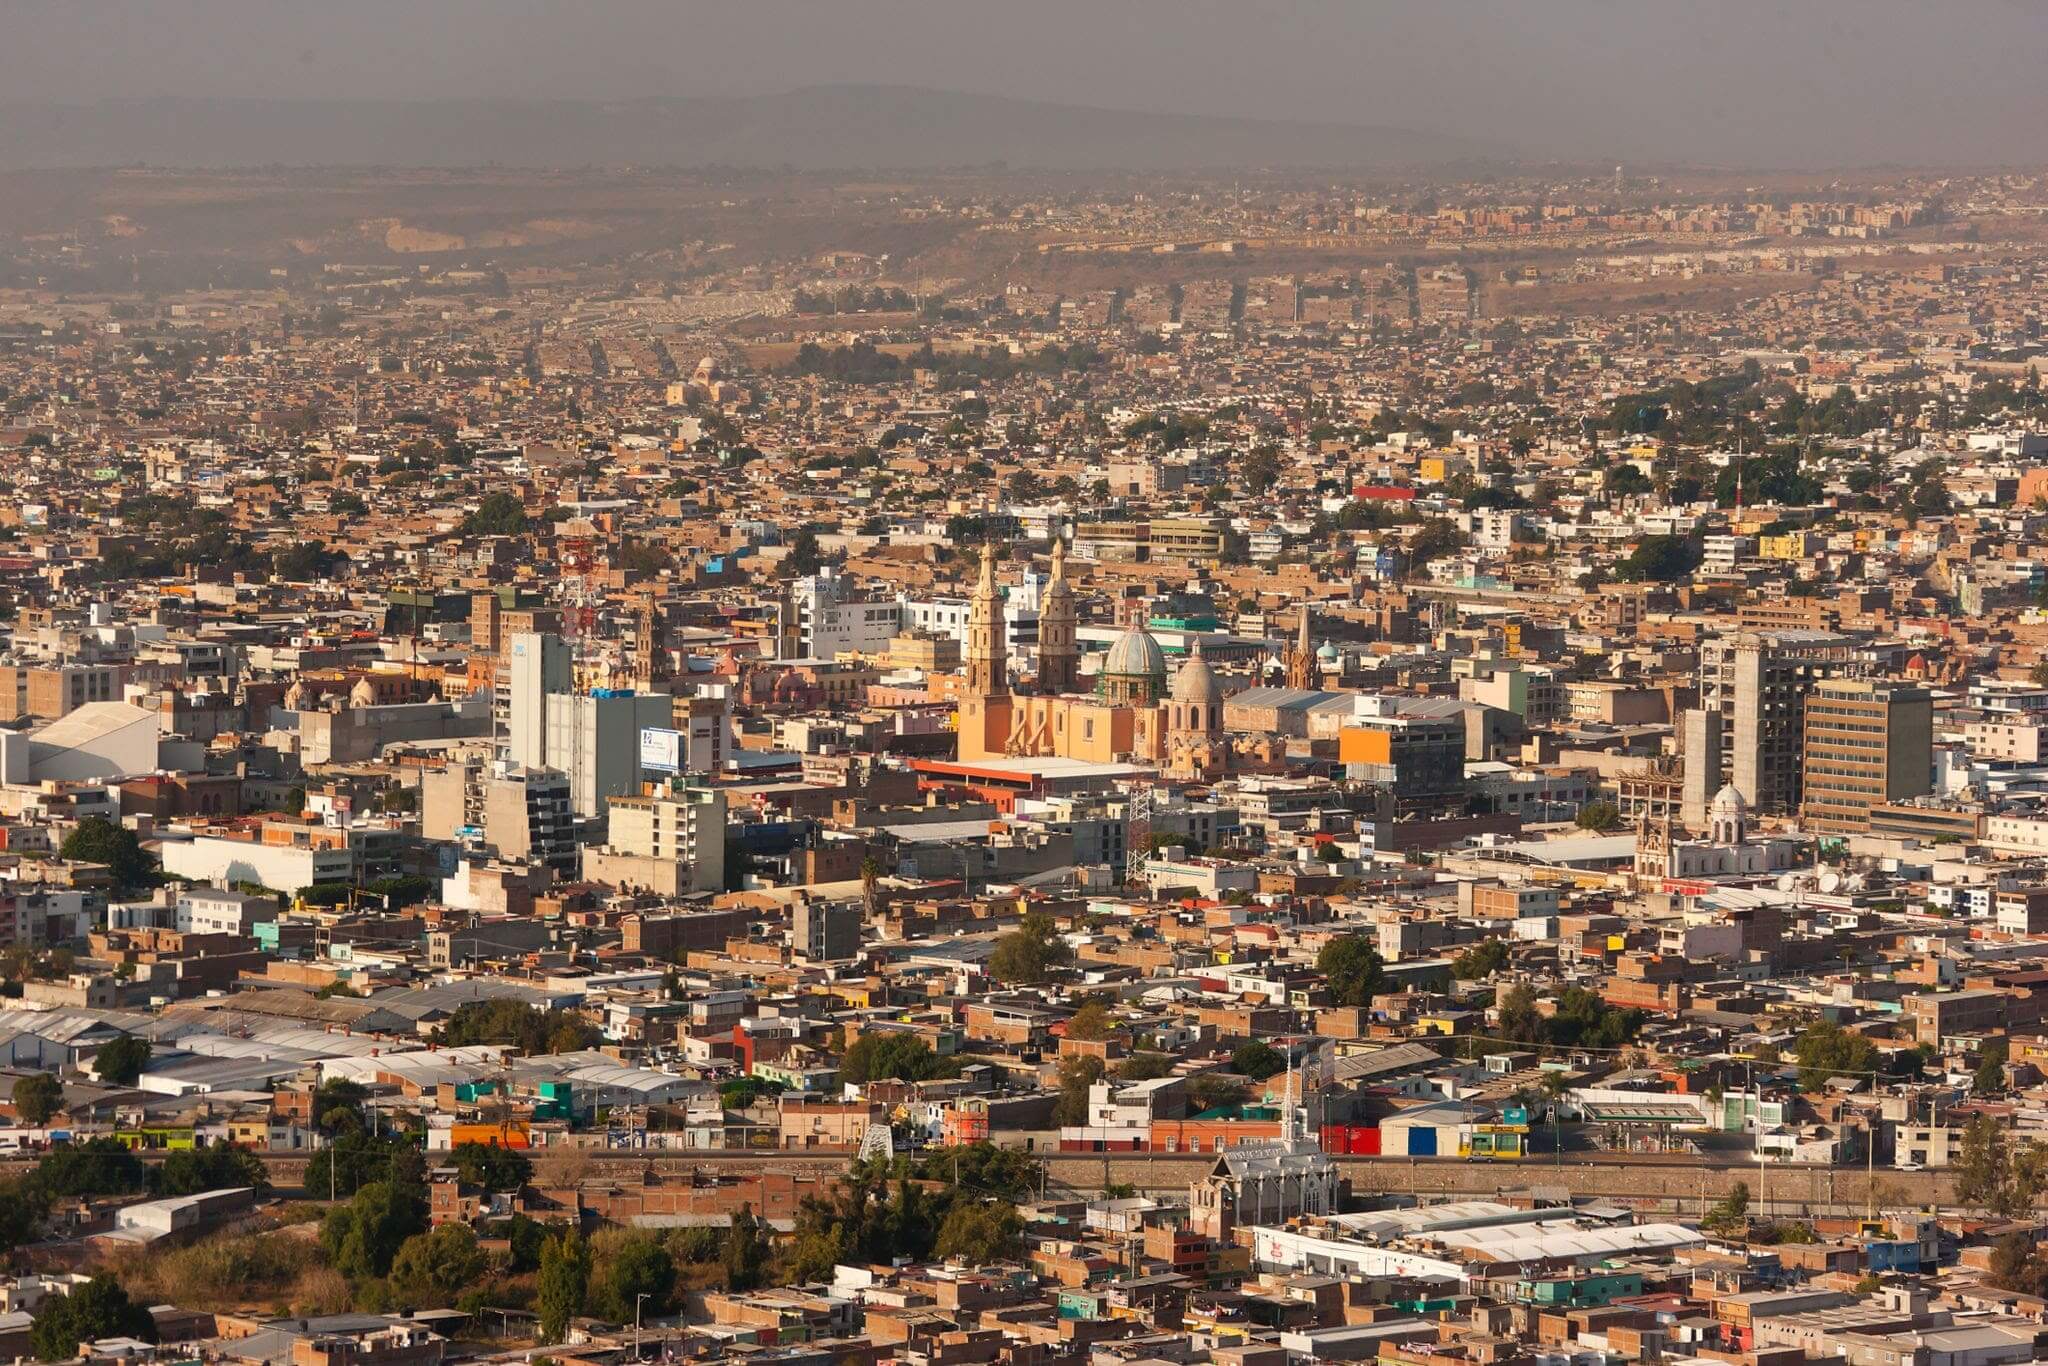 Vista aérea de León, Guanajuato, donde se encuentran diversos desarrollos inmobiliarios